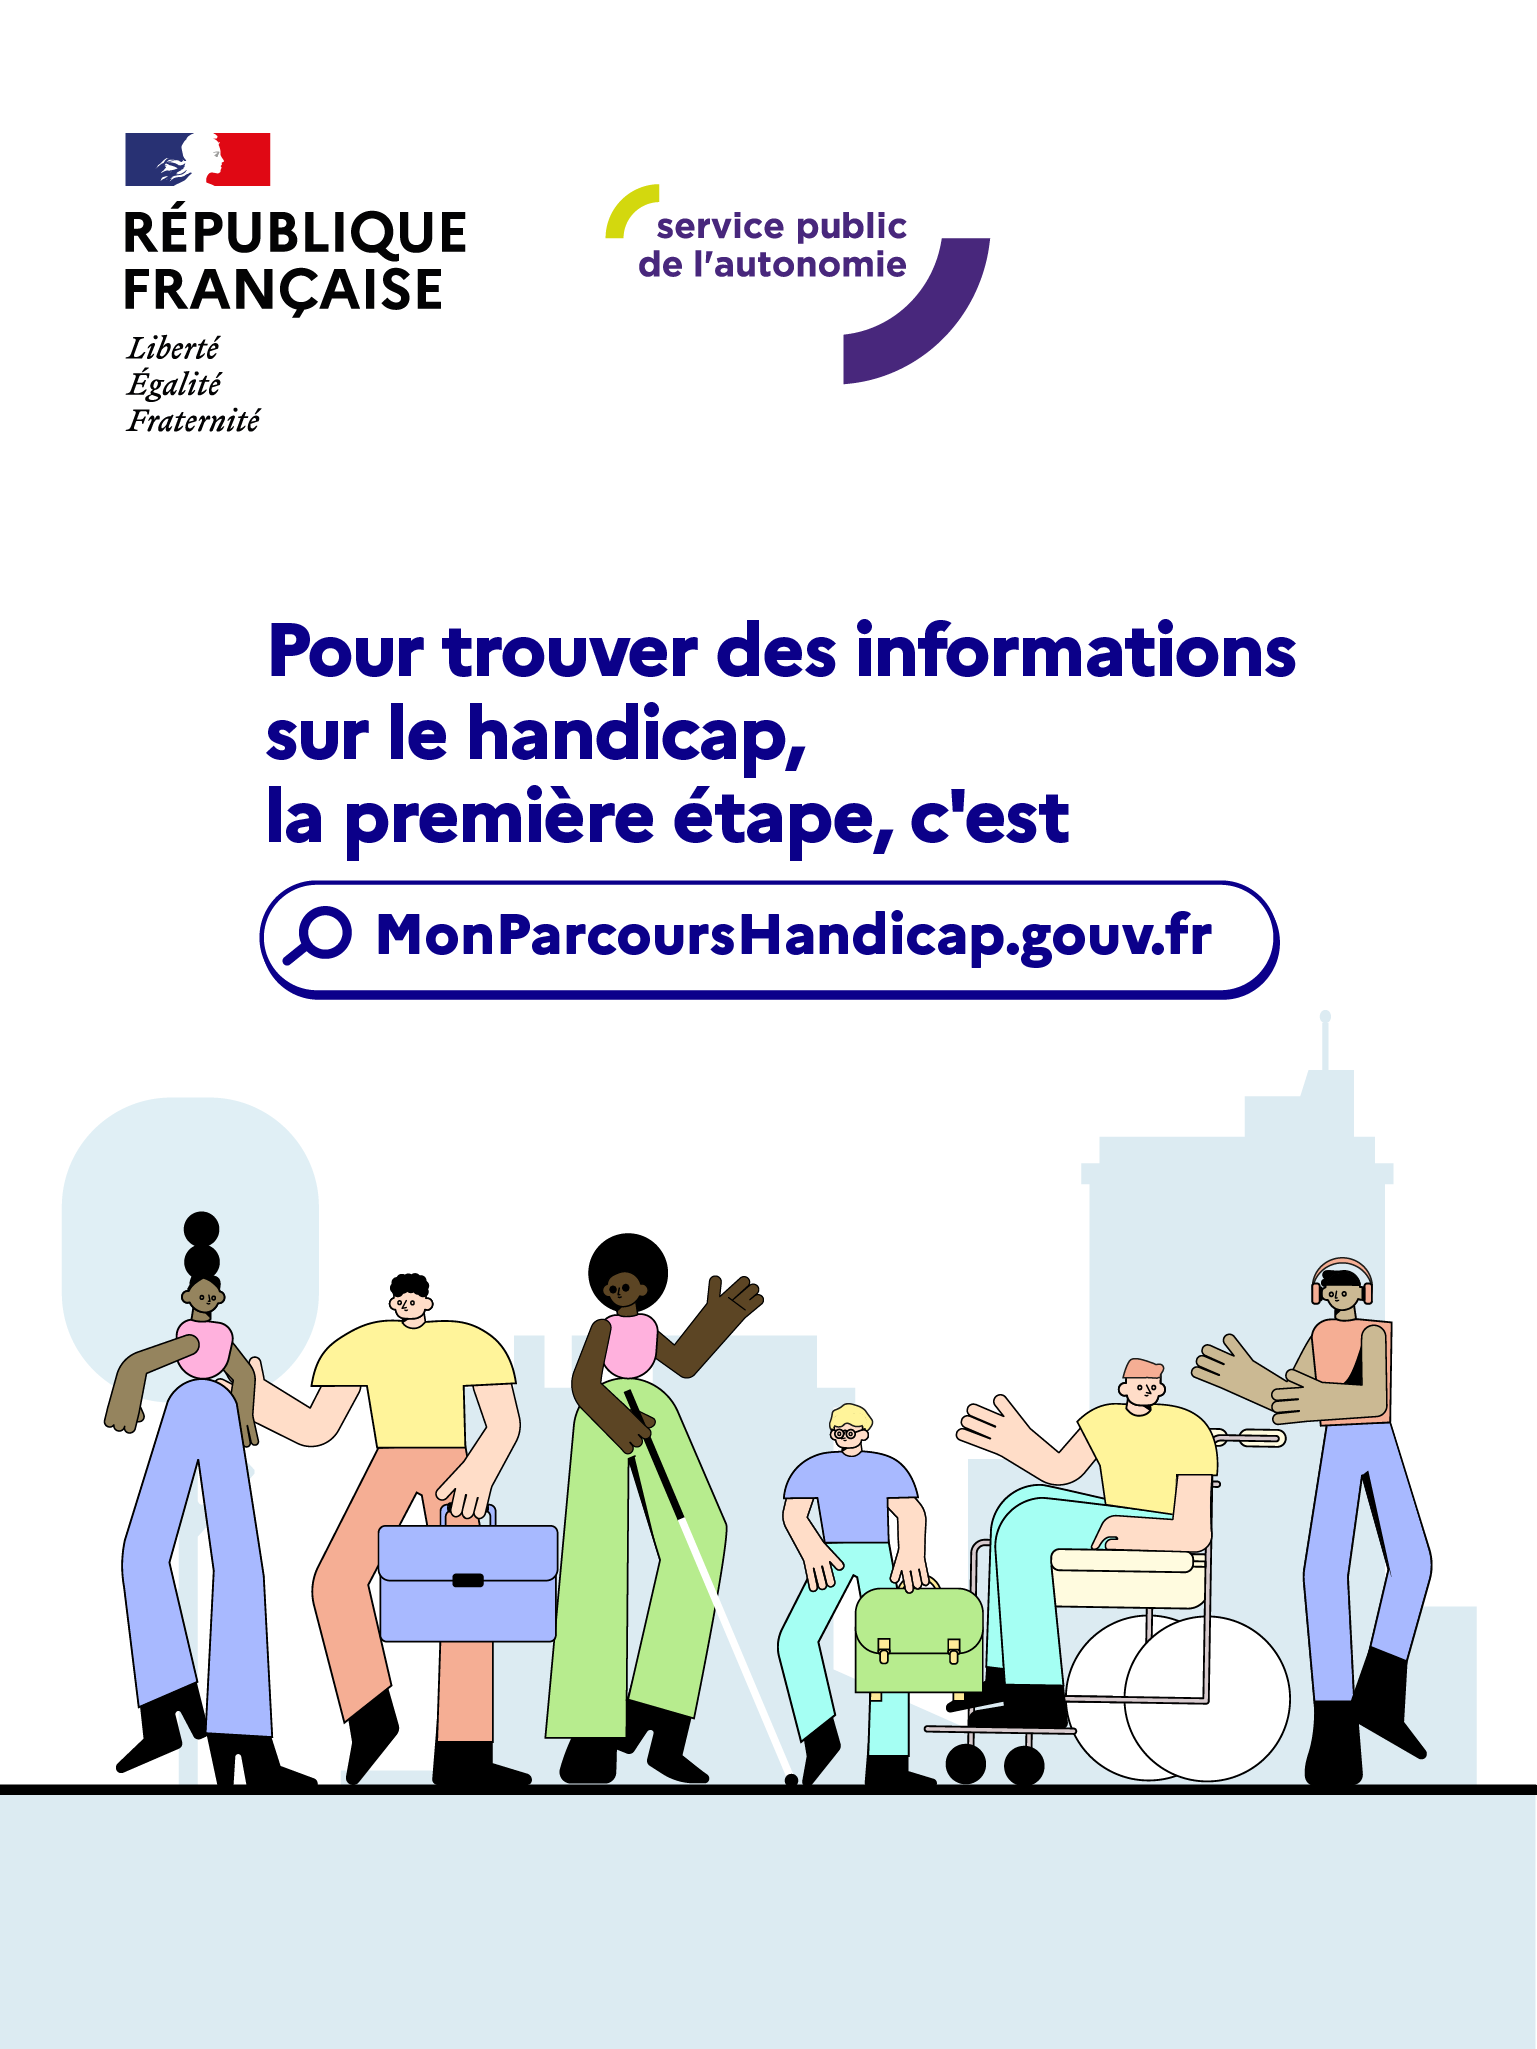 Pour trouver des informations sur le handicap : monparcourshandicap.gouv.fr